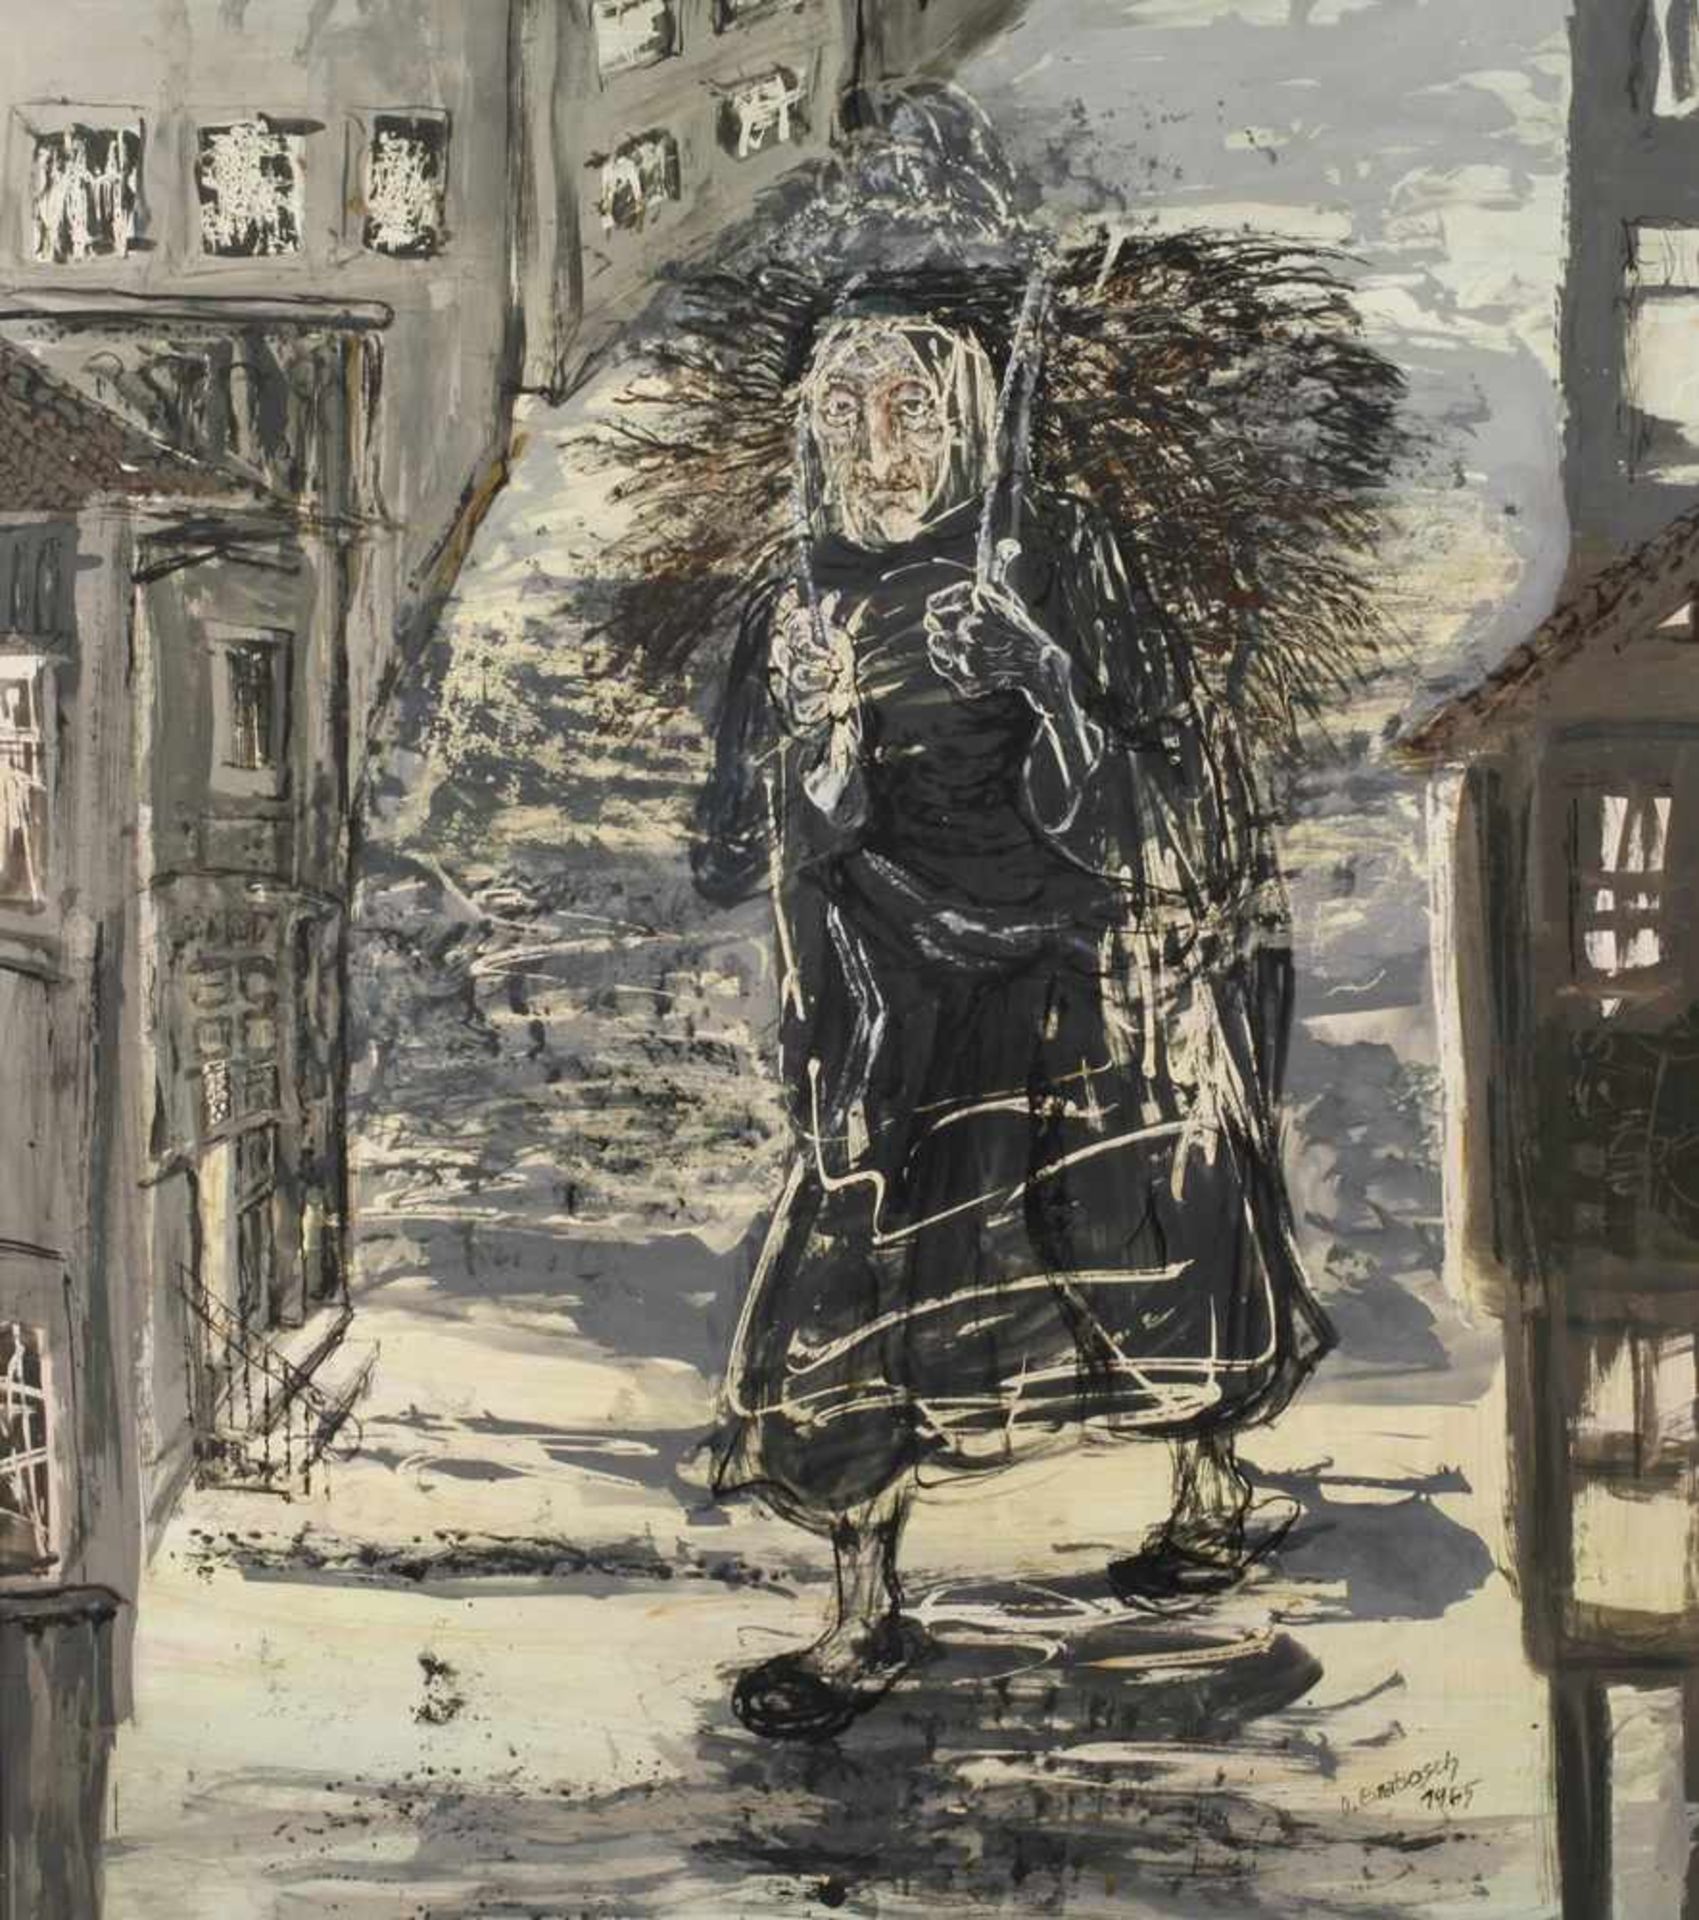 Dora Grabosch, "Regennasse Strasse"abstrahierte Darstellung einer alten Frau mit Reisigkiepe in